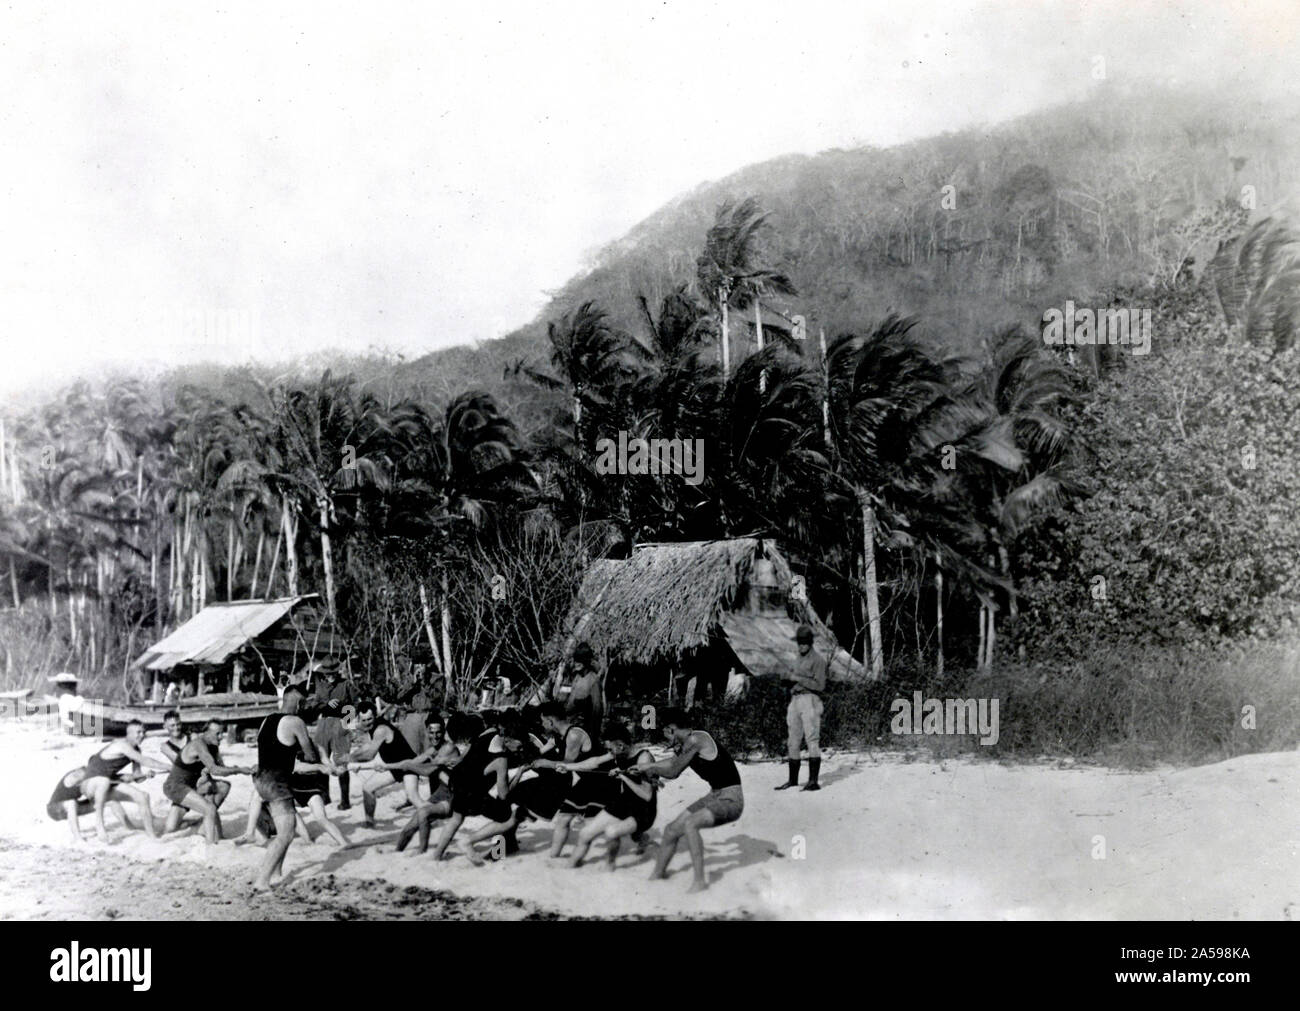 Amerikanische Soldaten in Panama. Amerikanische Soldaten mit einem Tauziehen übereinstimmen, der auf einer der Inseln in der Nähe des Panamakanals. Beachten Sie die dichten Dschungel im Hintergrund. 5/24/1920 Stockfoto